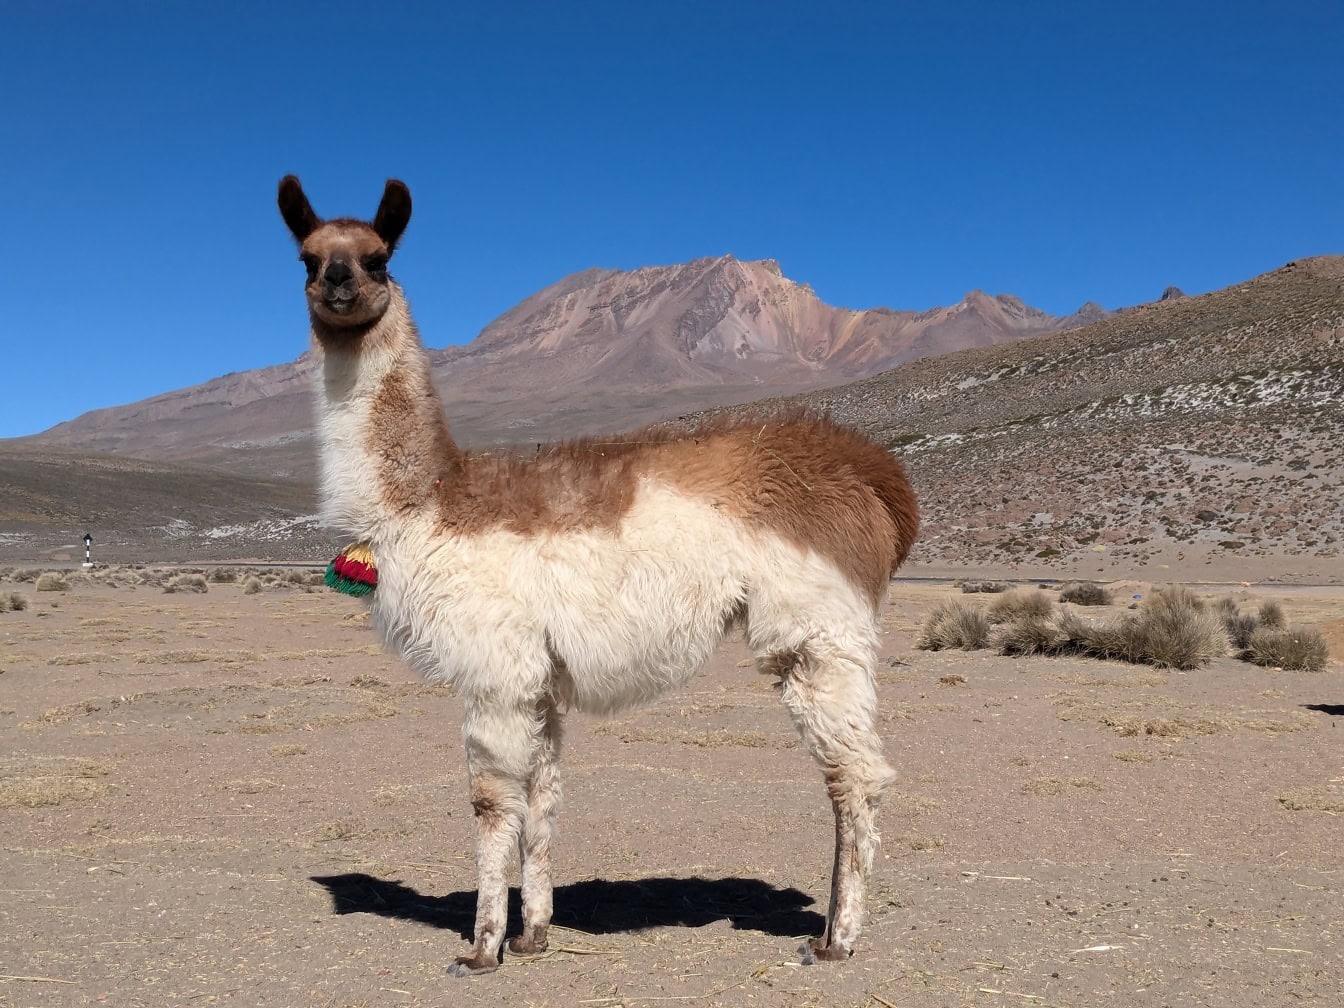 Tamme lamaer stående i en ørken i Andesbjergene i Peru